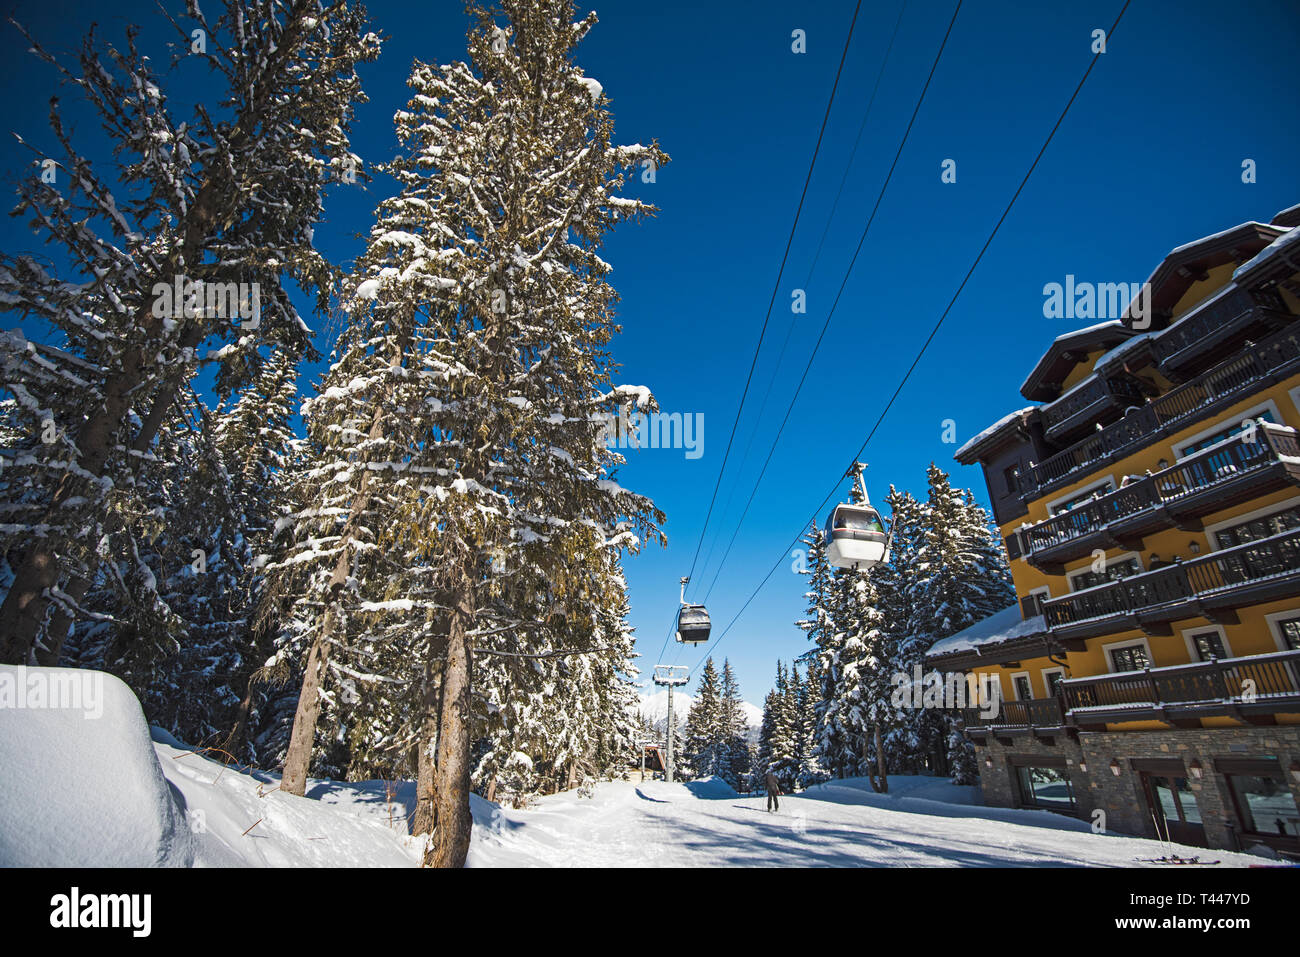 Vista panoramica di una coperta di neve delle piste da sci e gli alberi in una località alpina con funivia sollevare e hotel Foto Stock